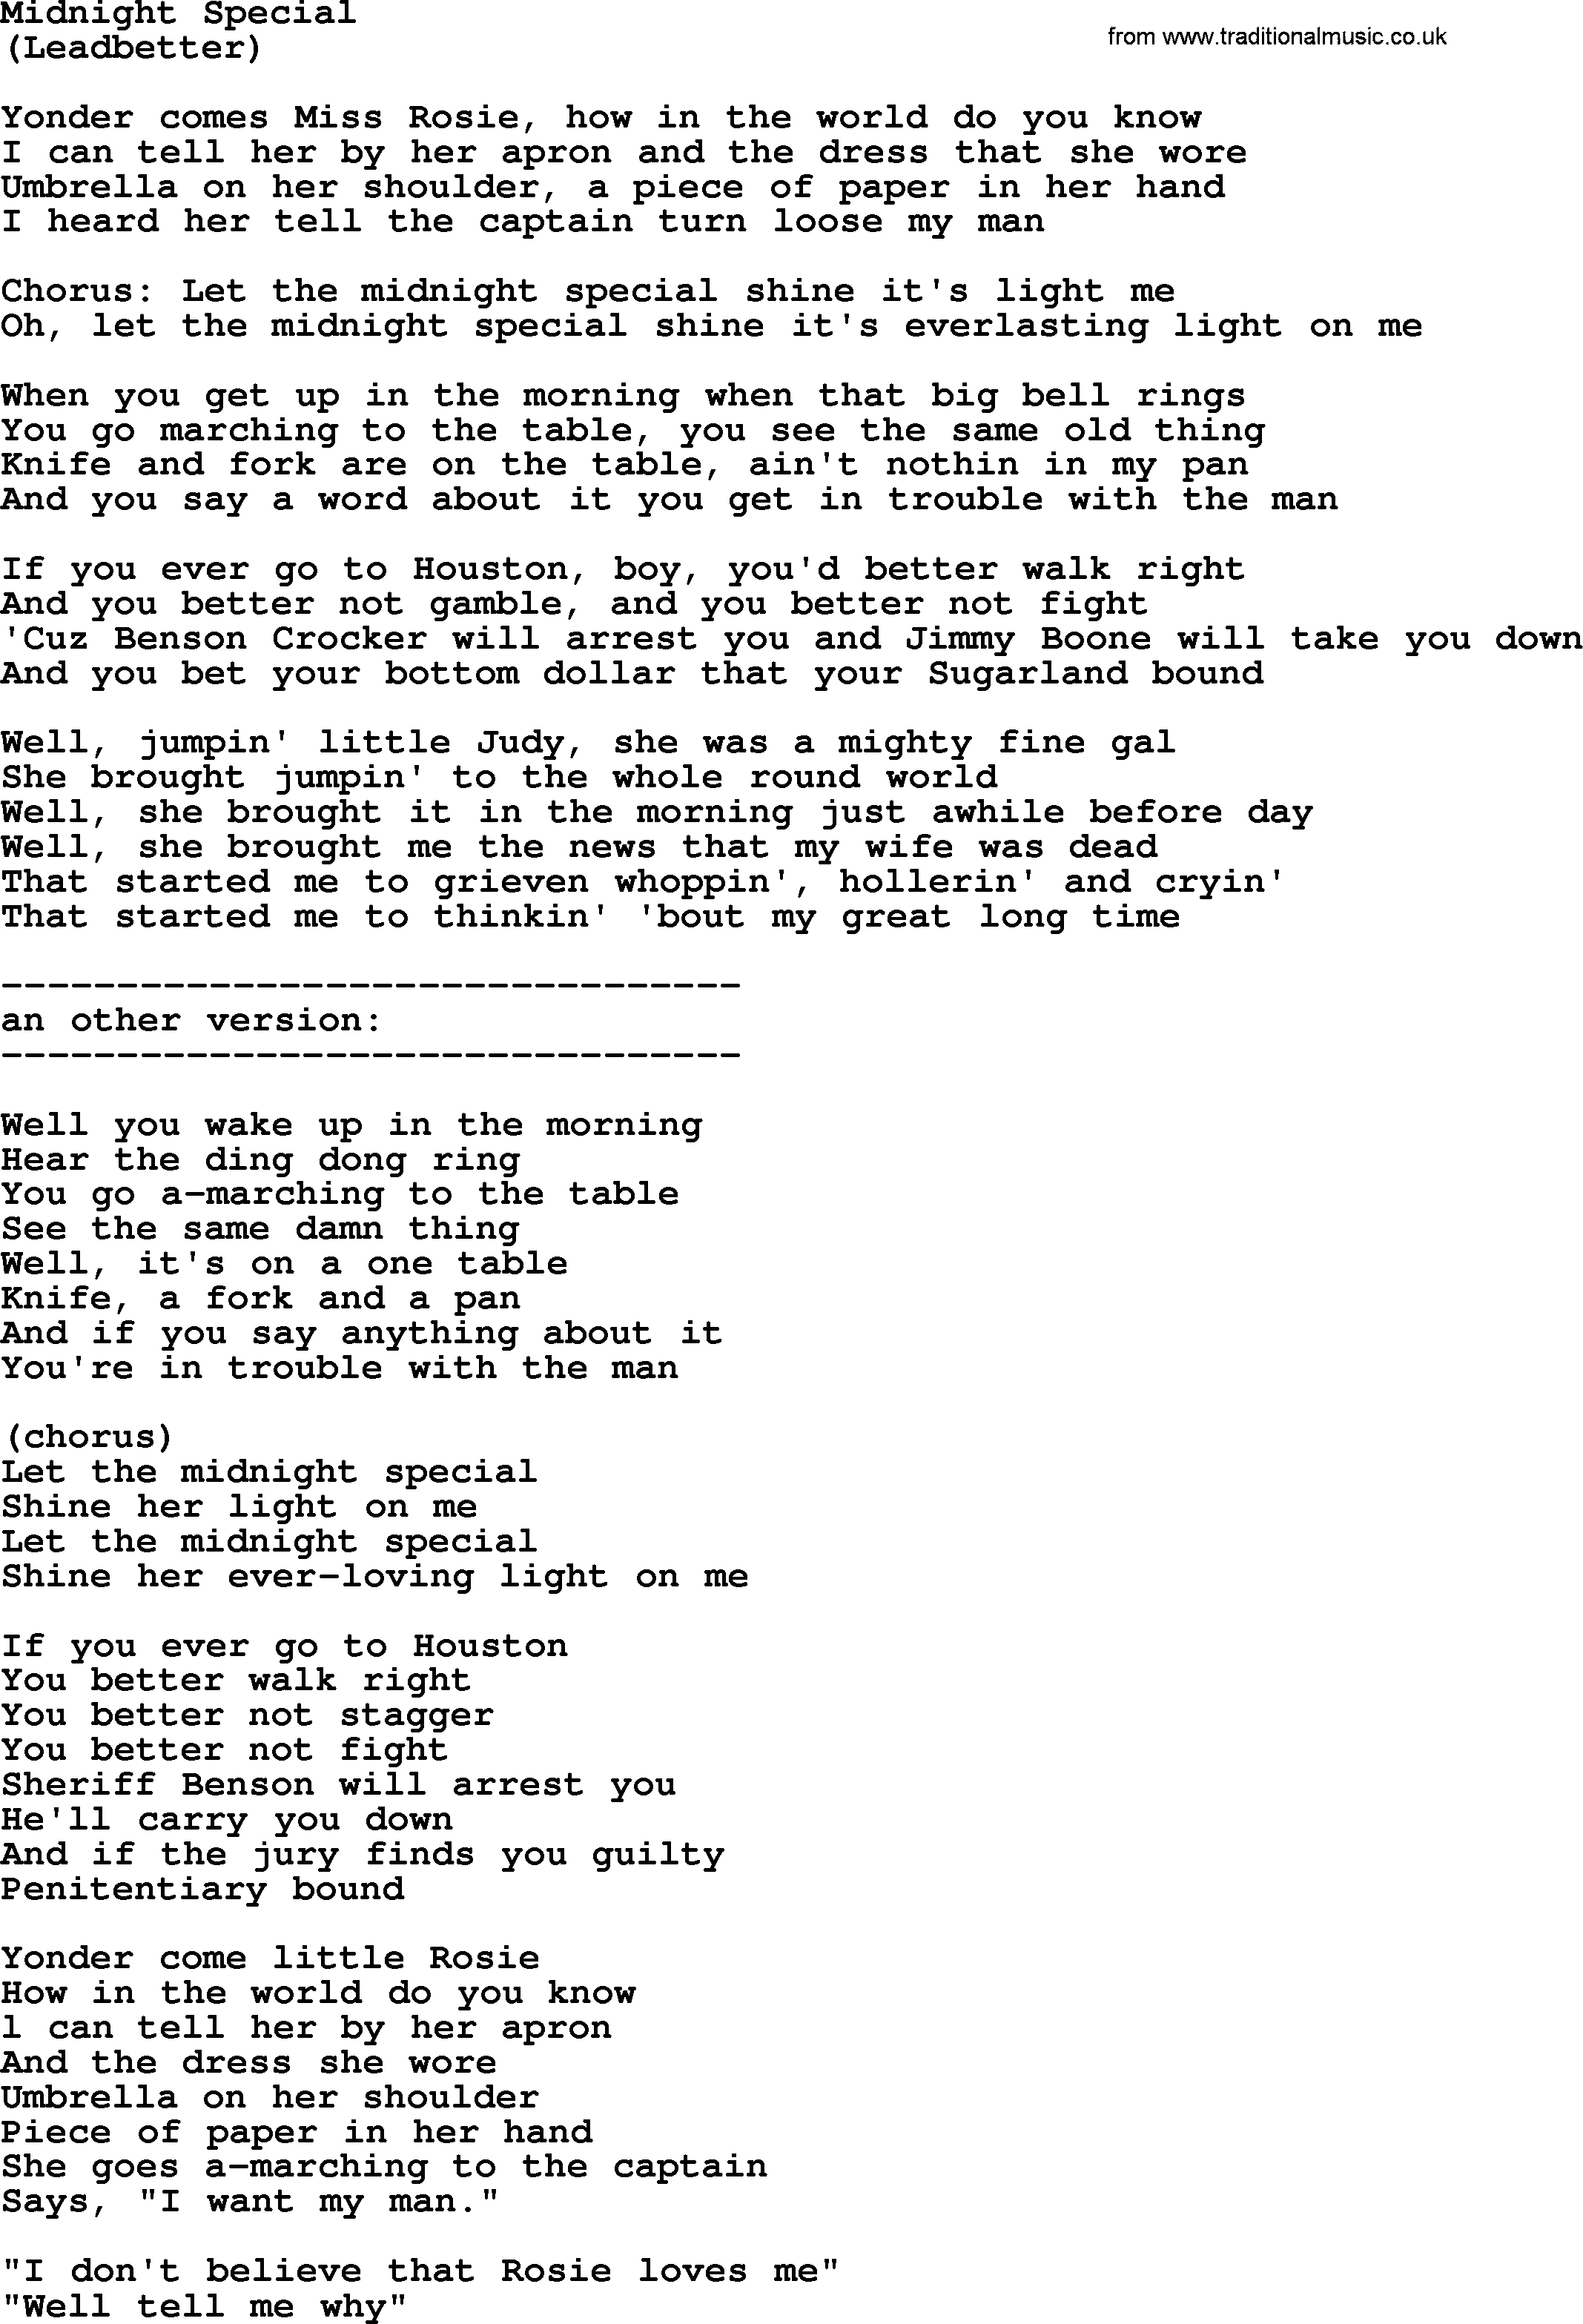 The Byrds song Midnight Special, lyrics